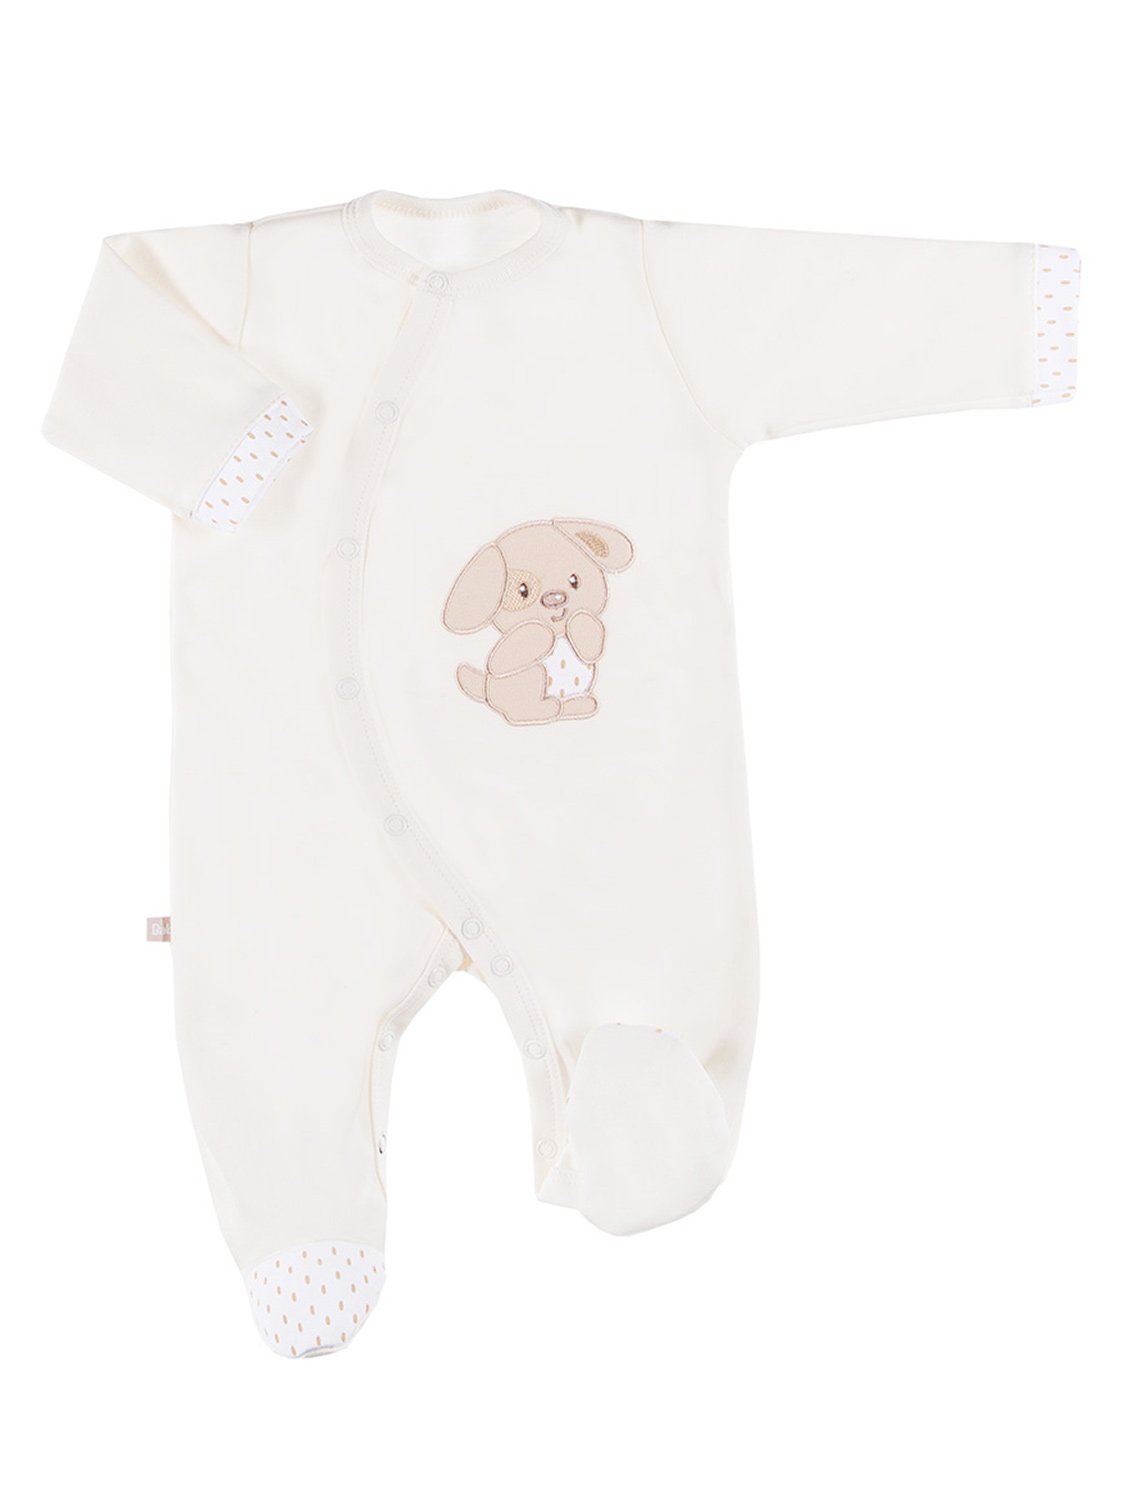 Early Baby Footed Sleepsuit - Puppy, Cream - Sleepsuit / Babygrow - EEVI